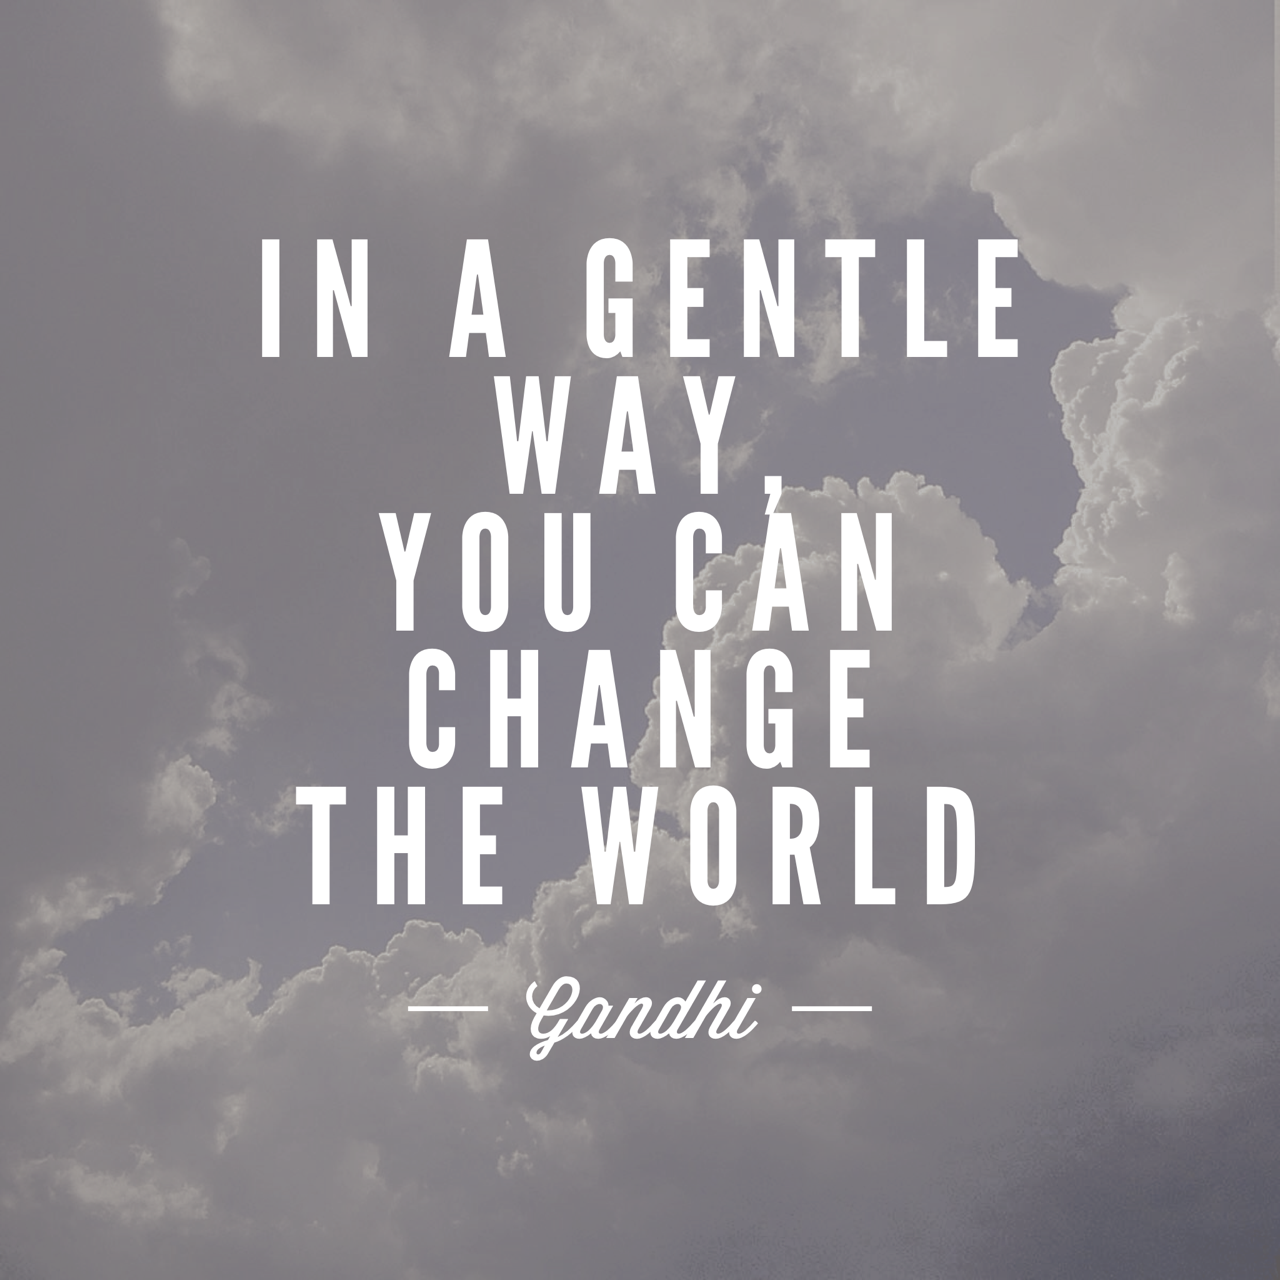 In a gentle way - Gandhi